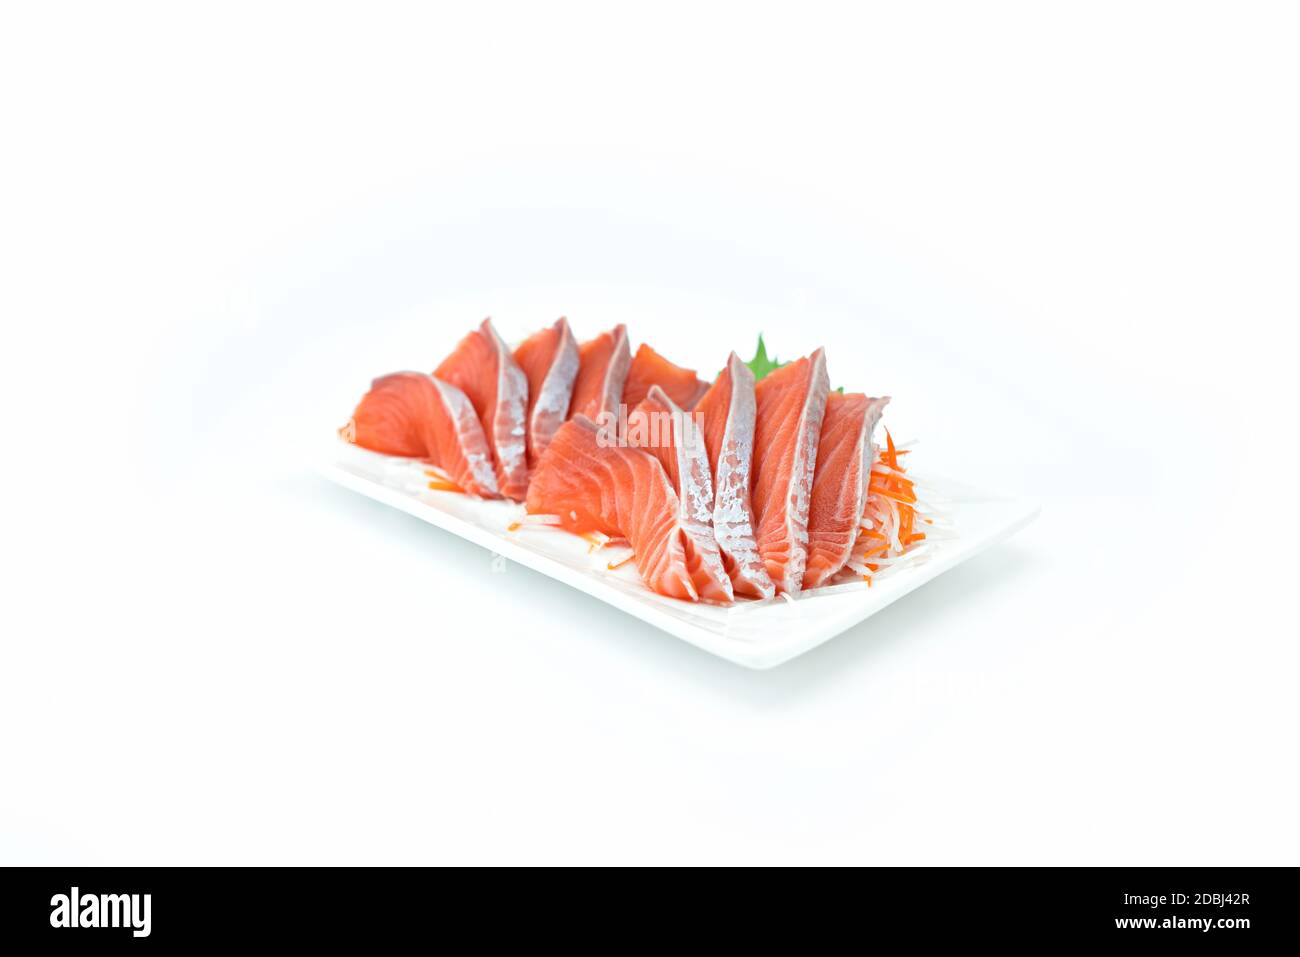 Salmon Sashimi on white background.  Japan food concept Stock Photo